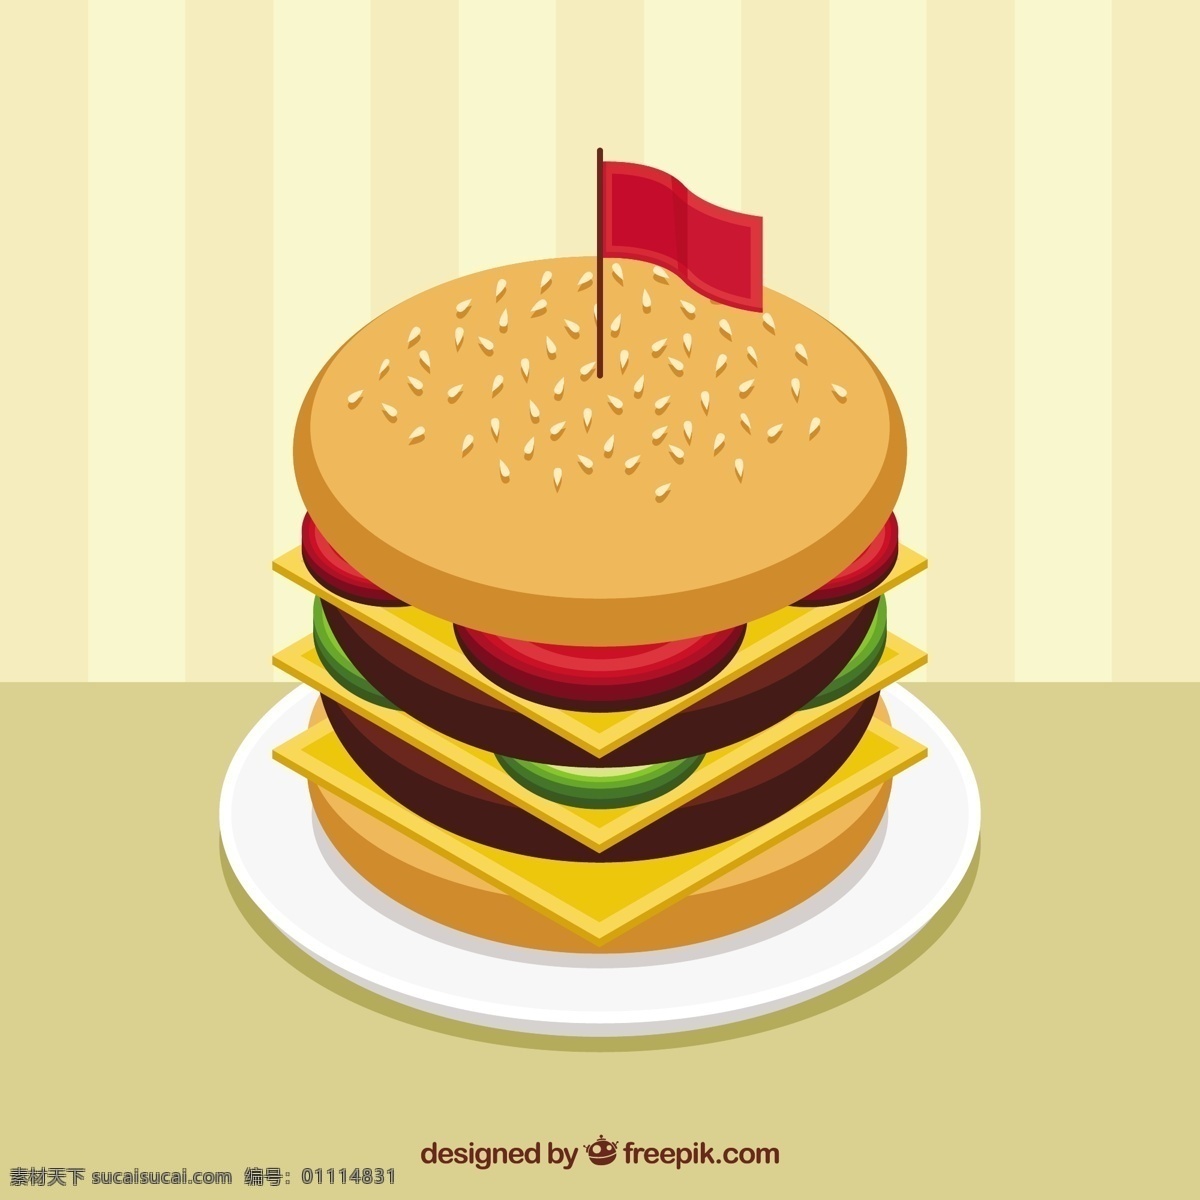 美味 汉堡 背景 食物 菜单 颜色 扁平 丰富多彩 快餐 平面设计 食物菜单 奶酪 汉堡包 番茄 午餐 小吃 餐 背景色